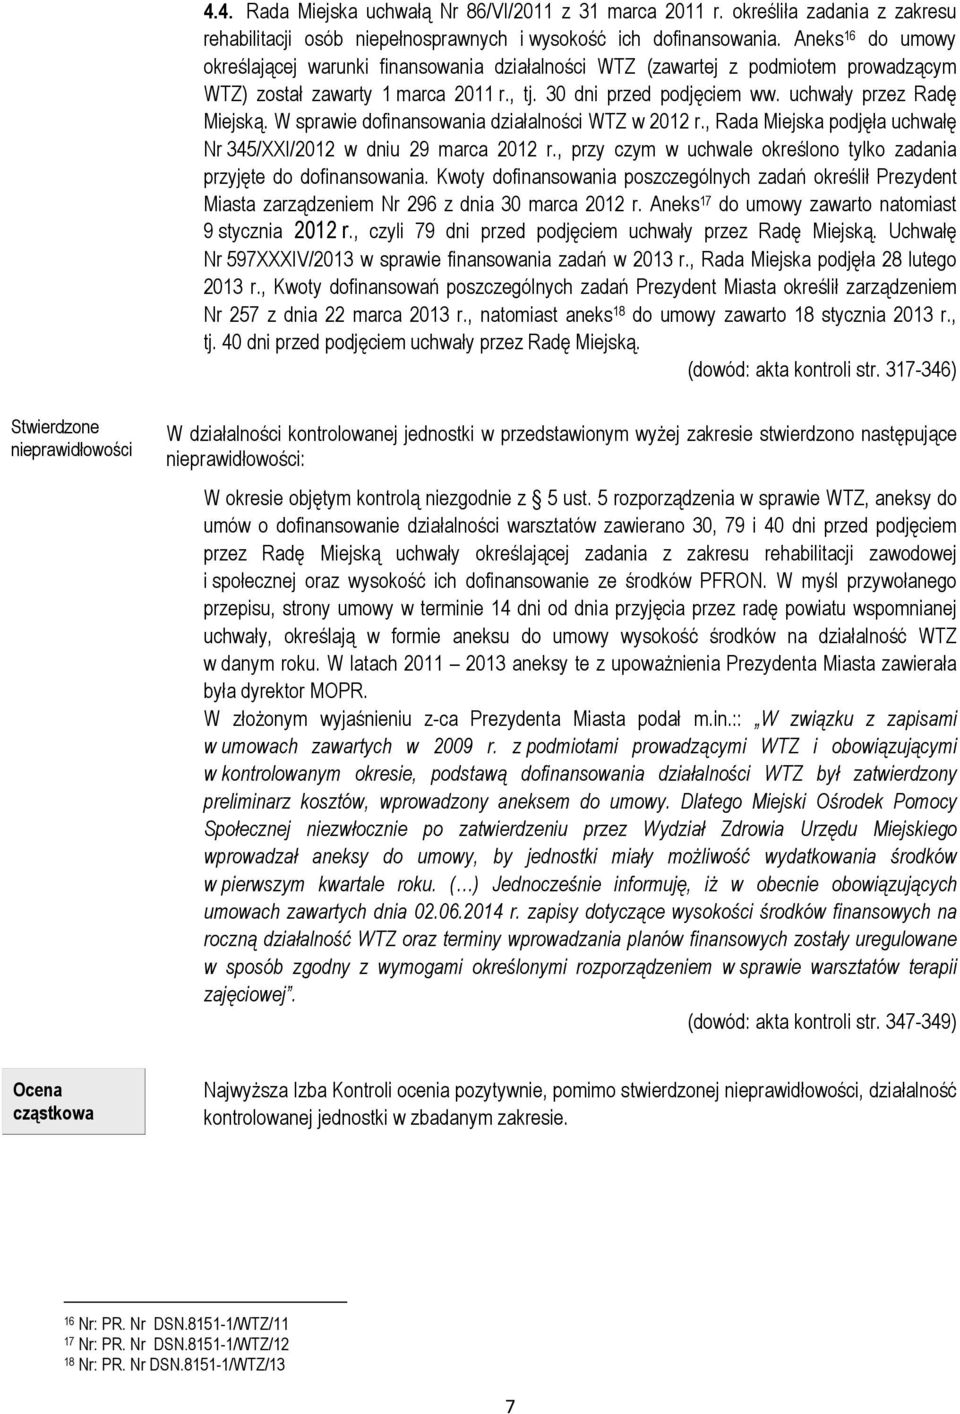 W sprawie dofinansowania działalności WTZ w 2012 r., Rada Miejska podjęła uchwałę Nr 345/XXI/2012 w dniu 29 marca 2012 r., przy czym w uchwale określono tylko zadania przyjęte do dofinansowania.